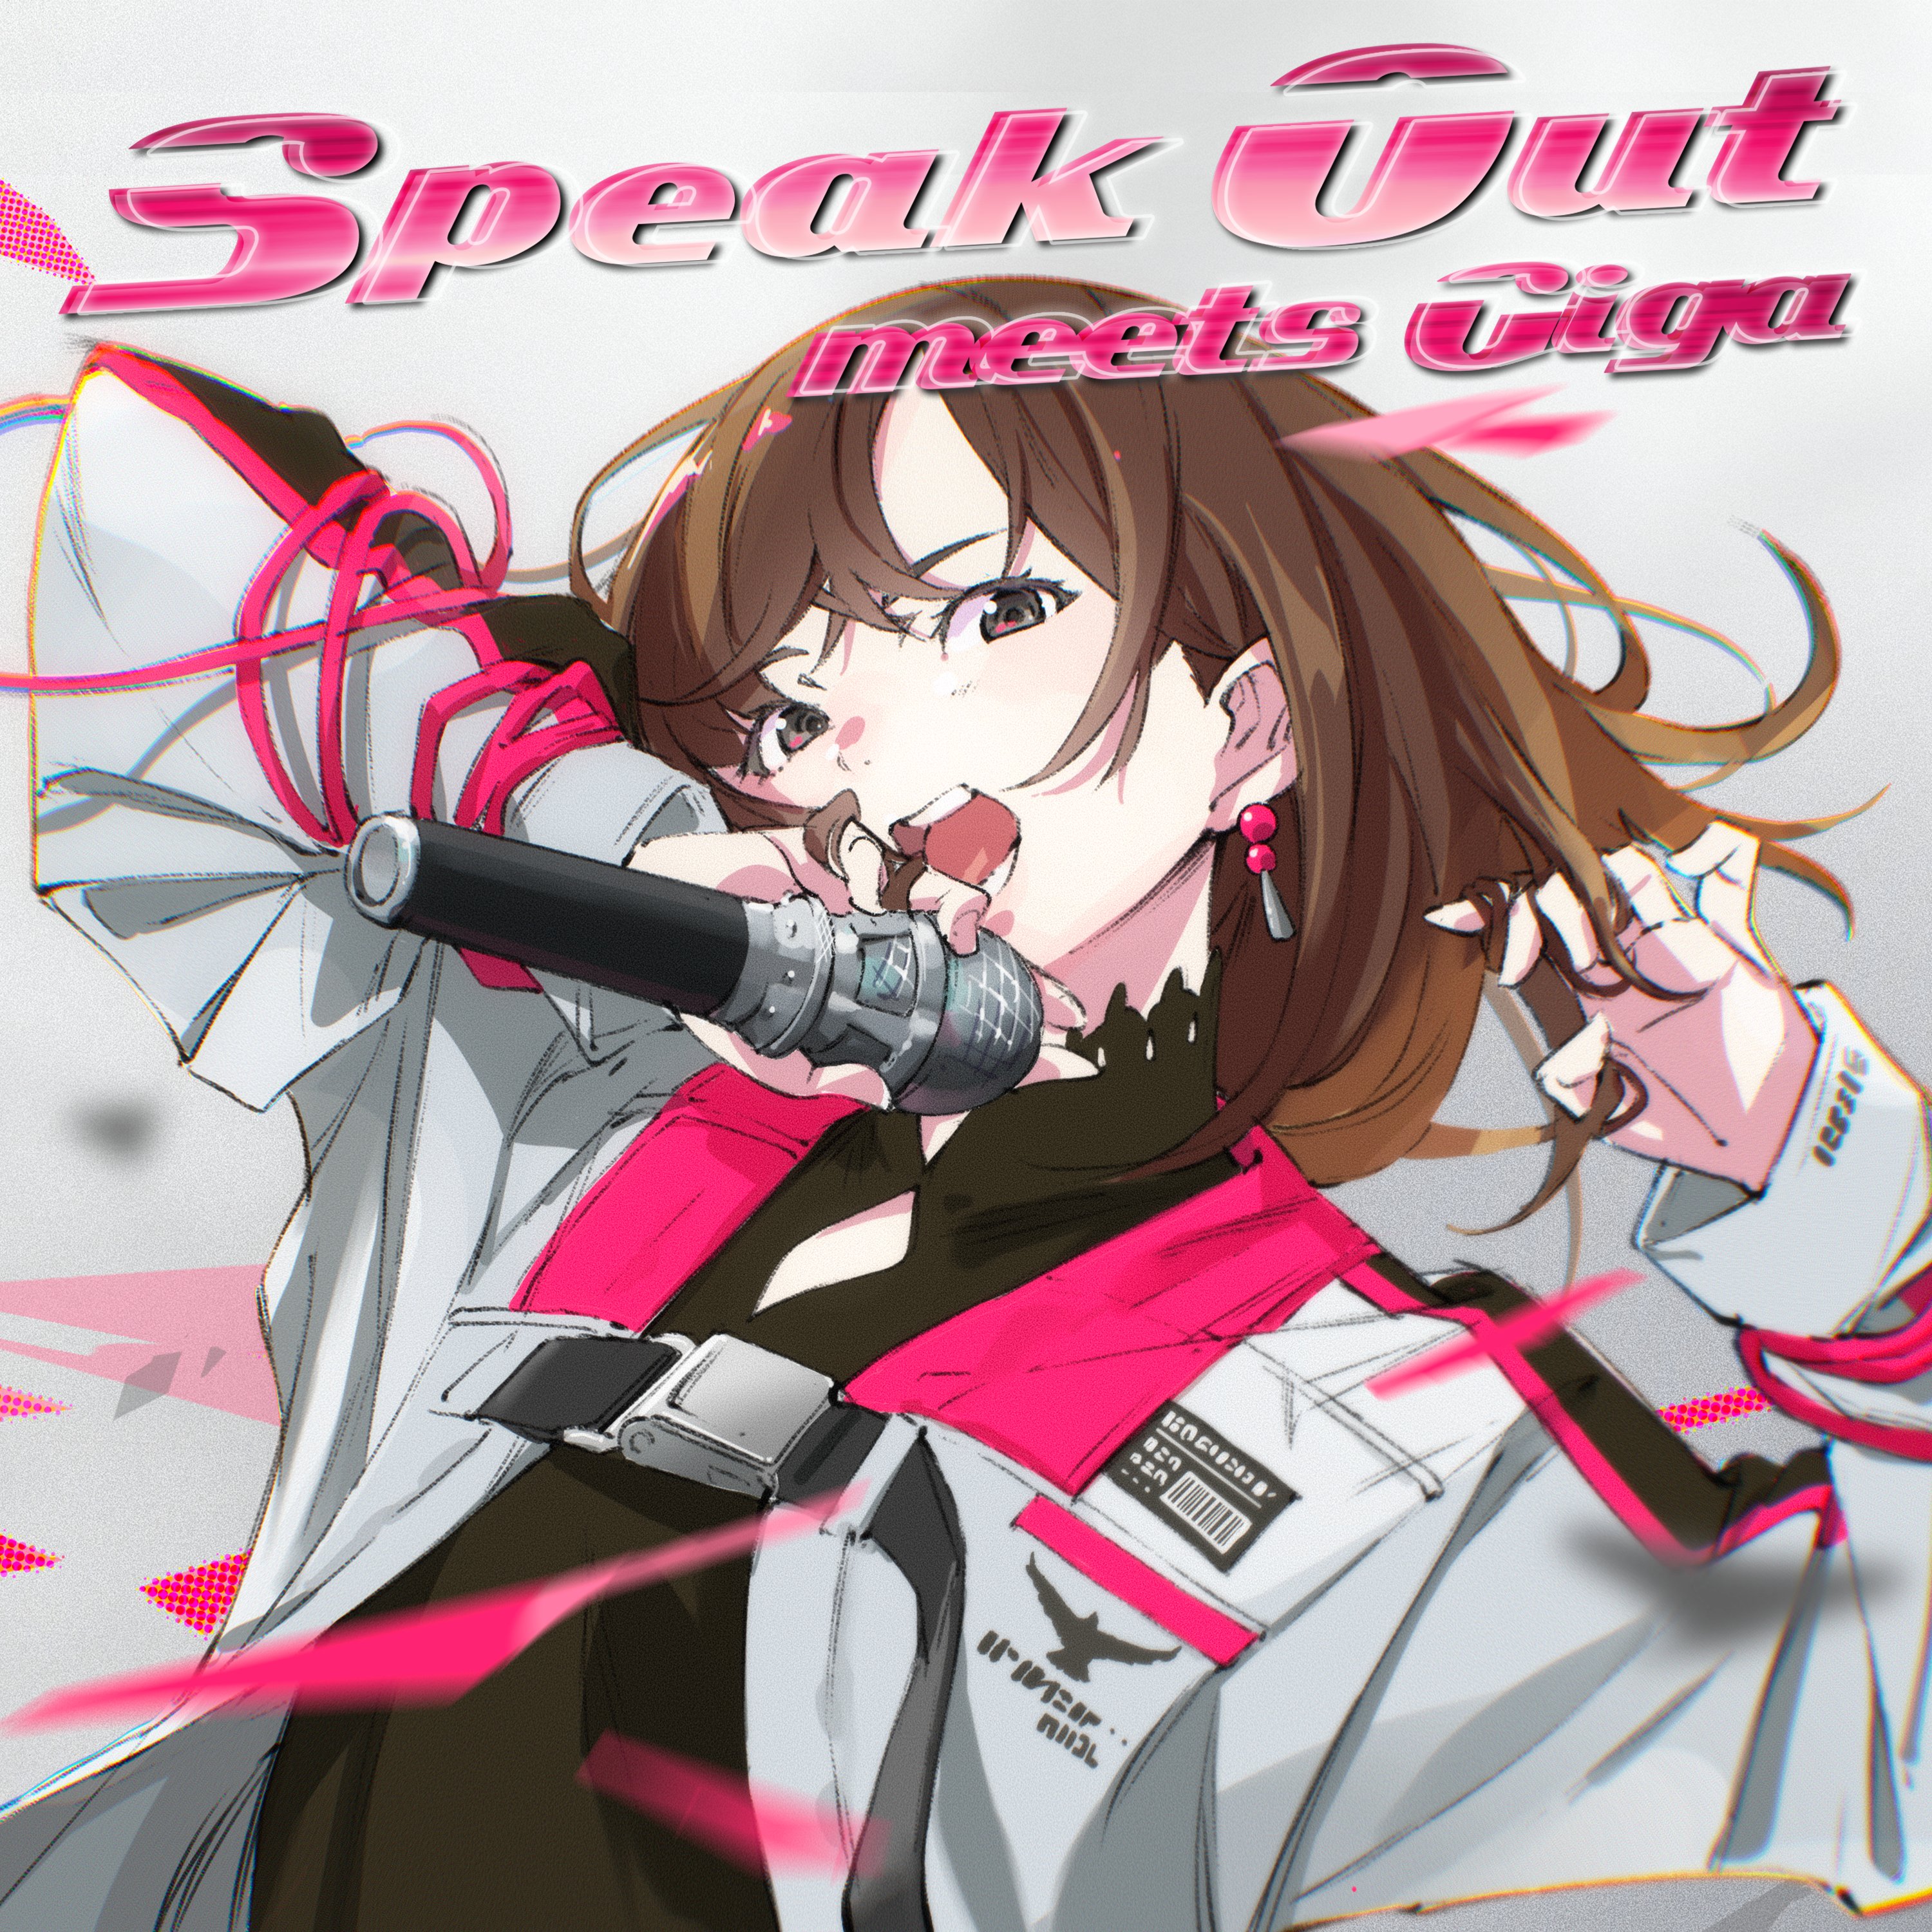 渕上 舞 - Speak Out meets Giga